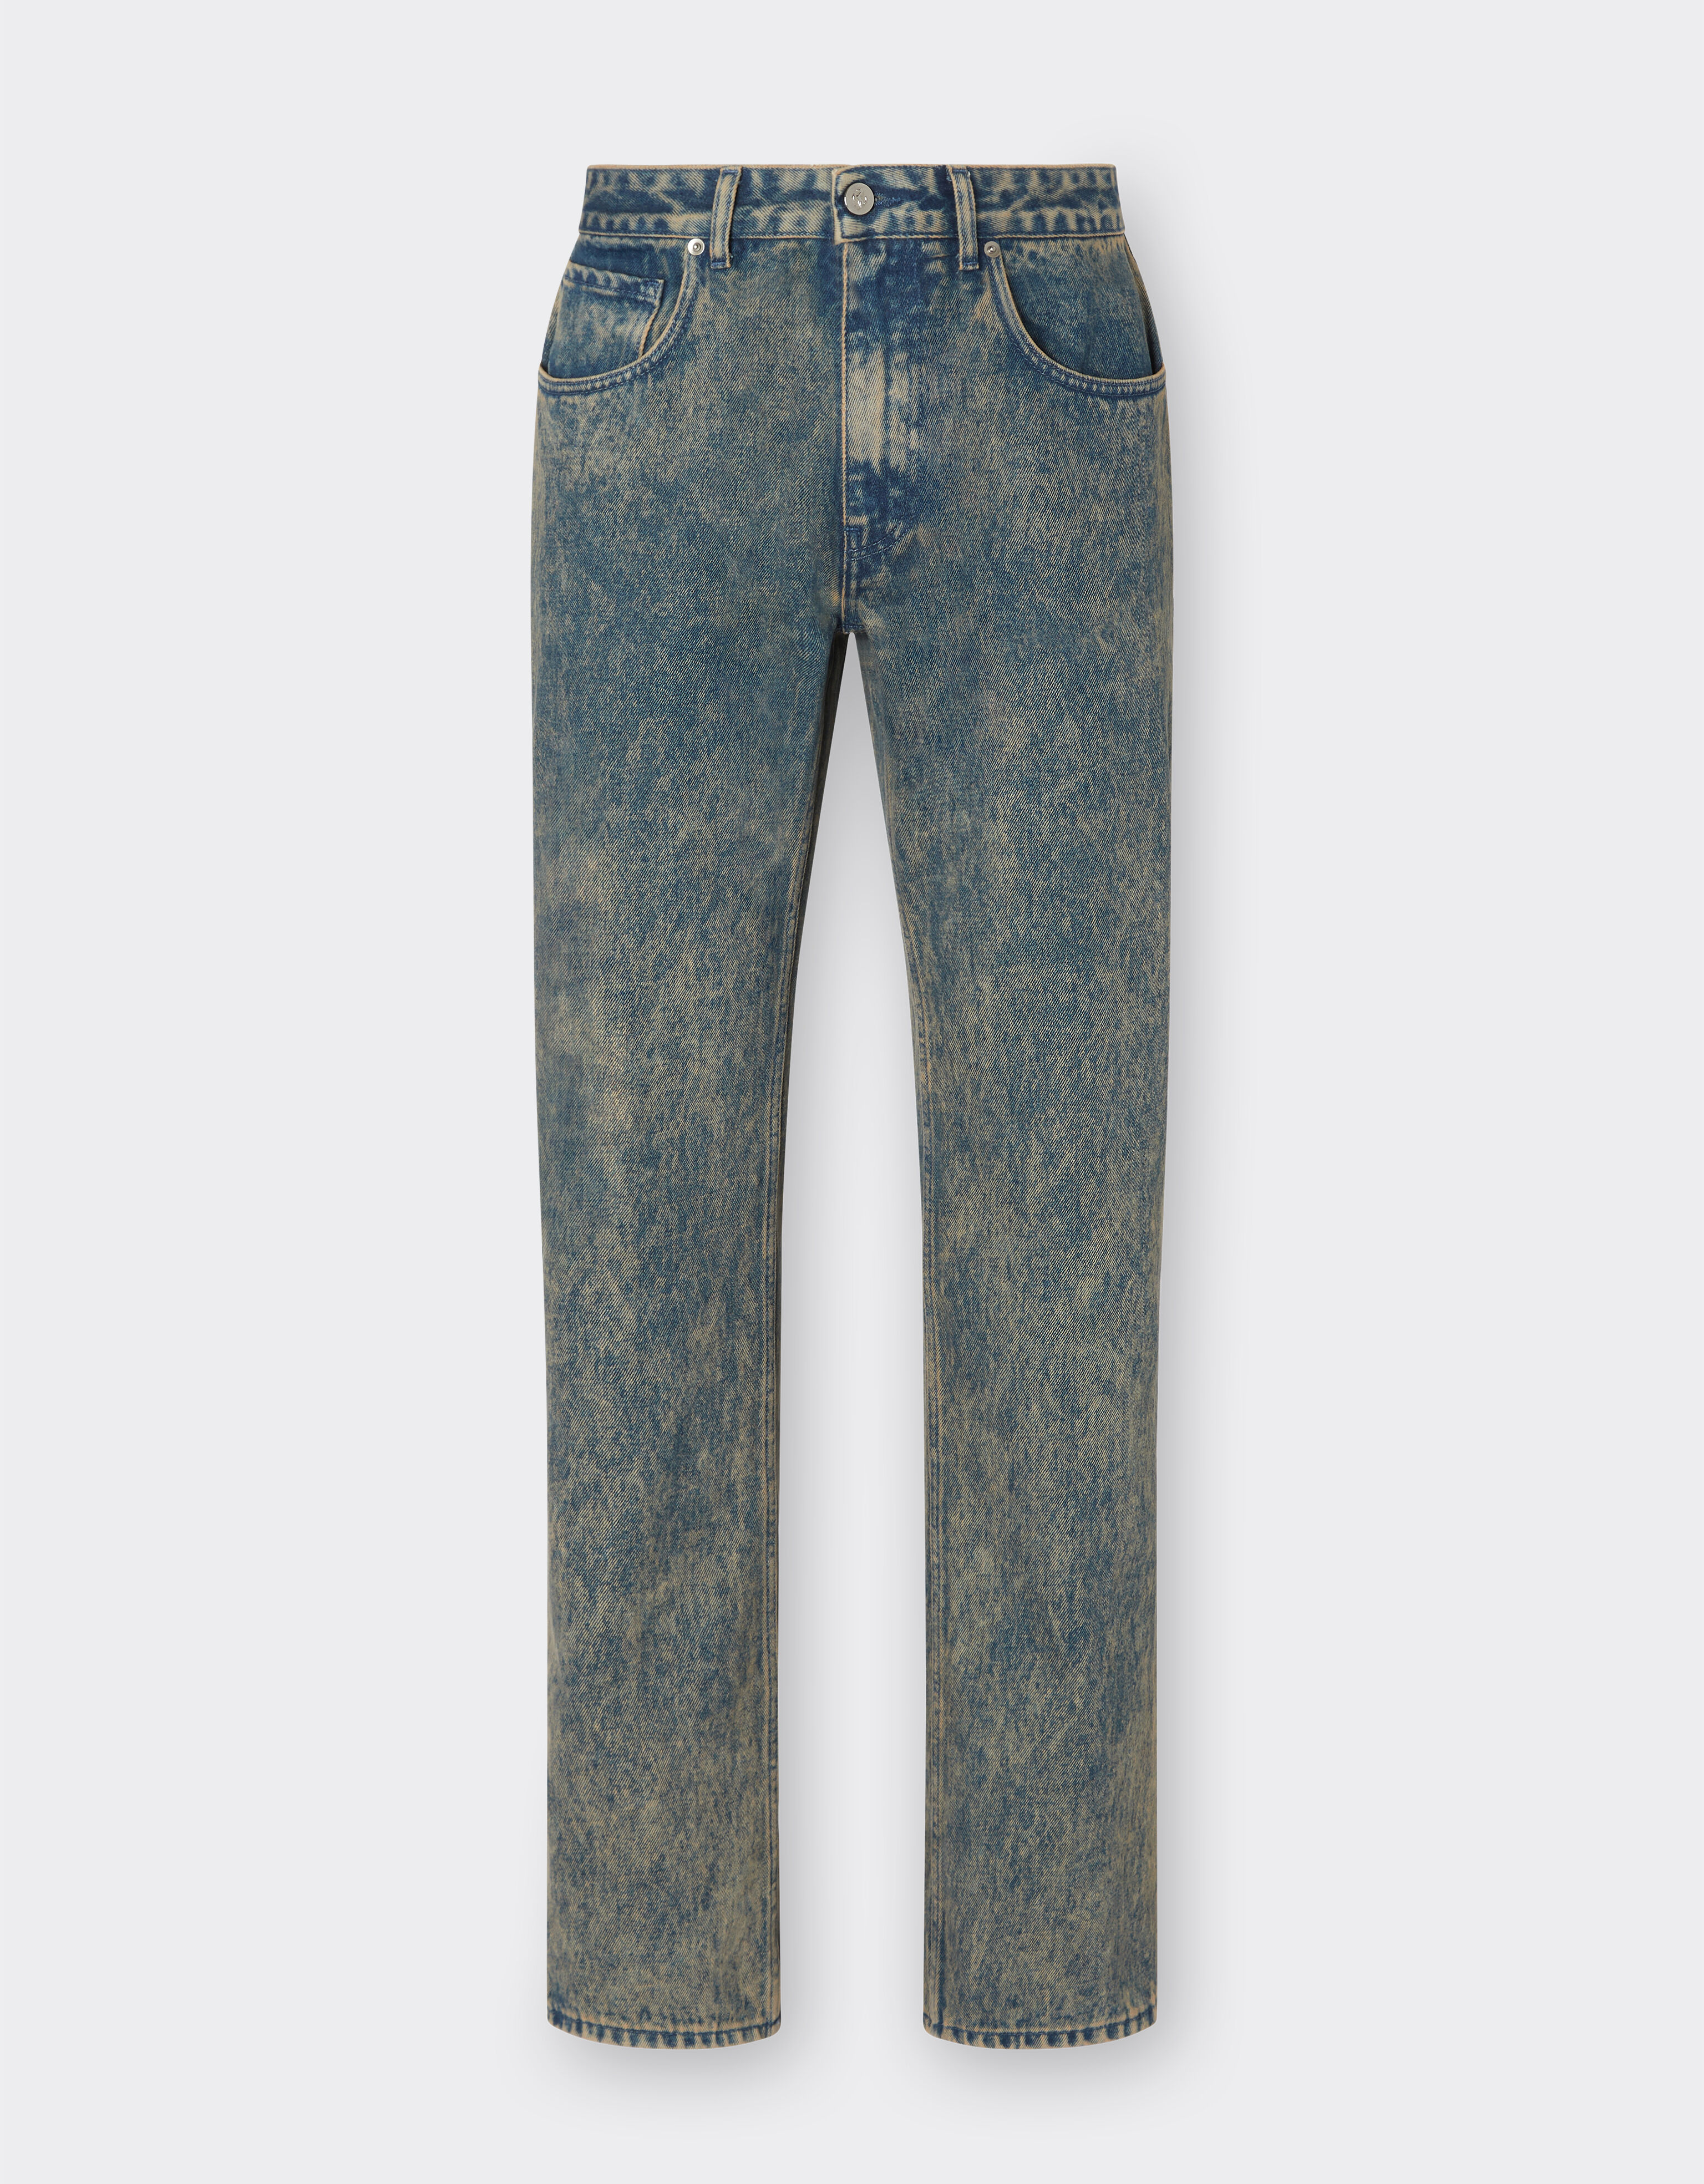 Ferrari Pantalone jeans con tintura effetto marmo Dark Brown 21213f